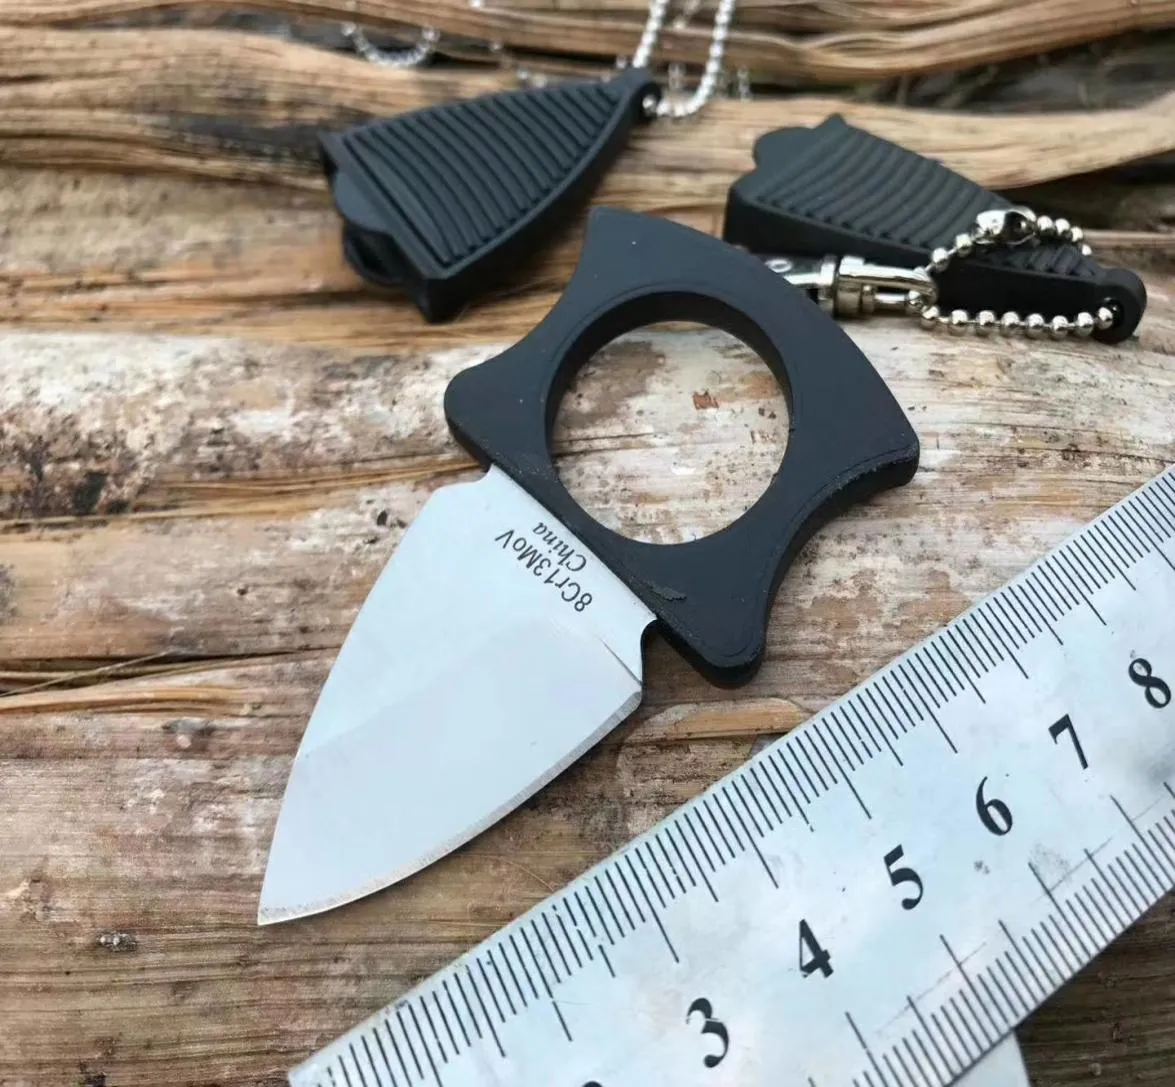 Agrussell RUC9134BK Karambits Claw Нож 8cr13mov Blade Field Выживание выживания самостоятельного определения ножа Camping EDC Knives7022210